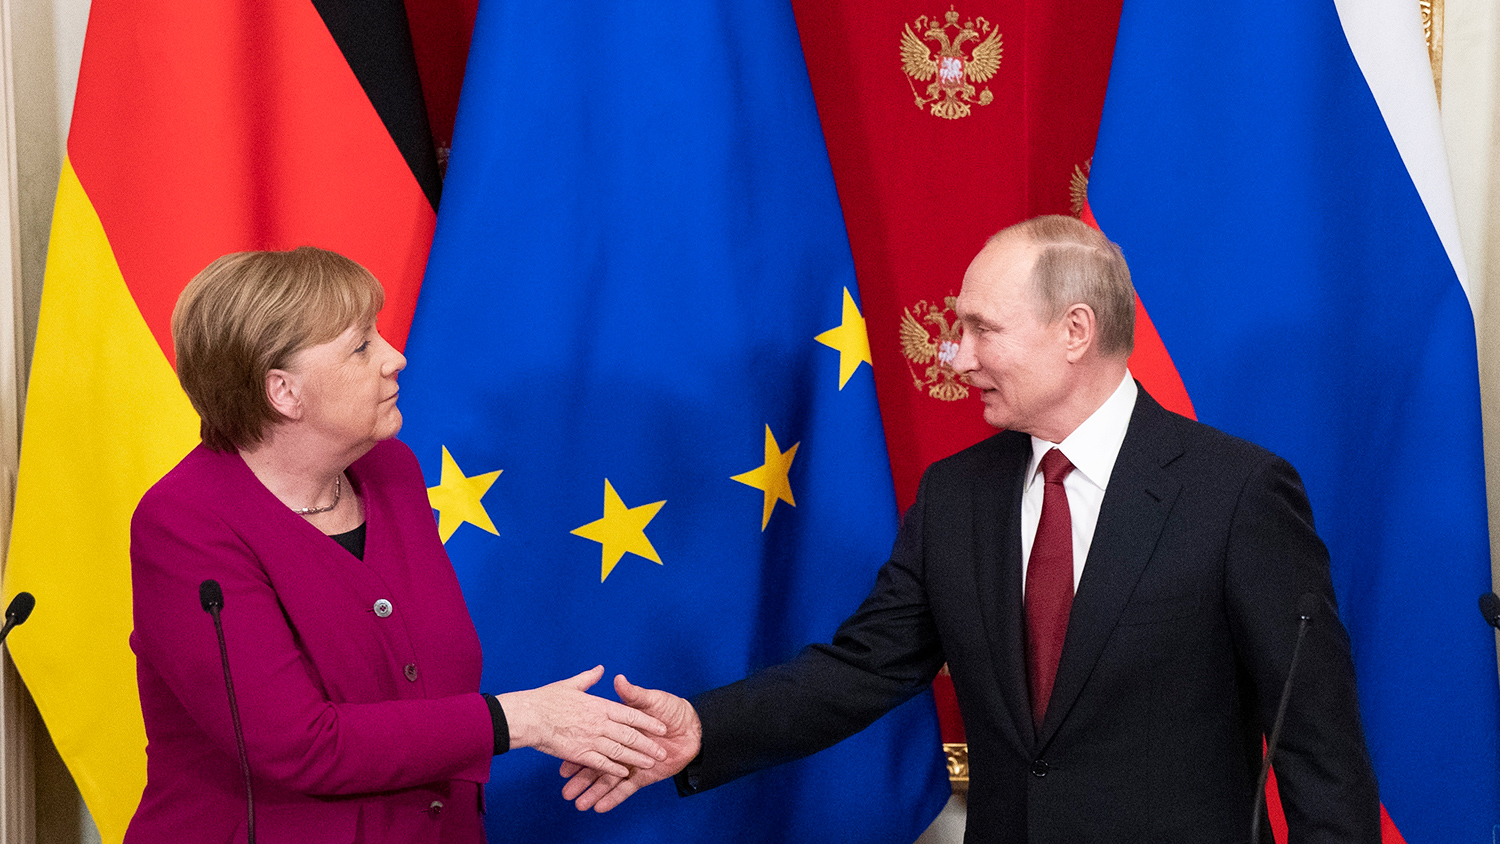 Последний визит Меркель в Москву в качестве канцлера ФРГ станет 20-м по счету